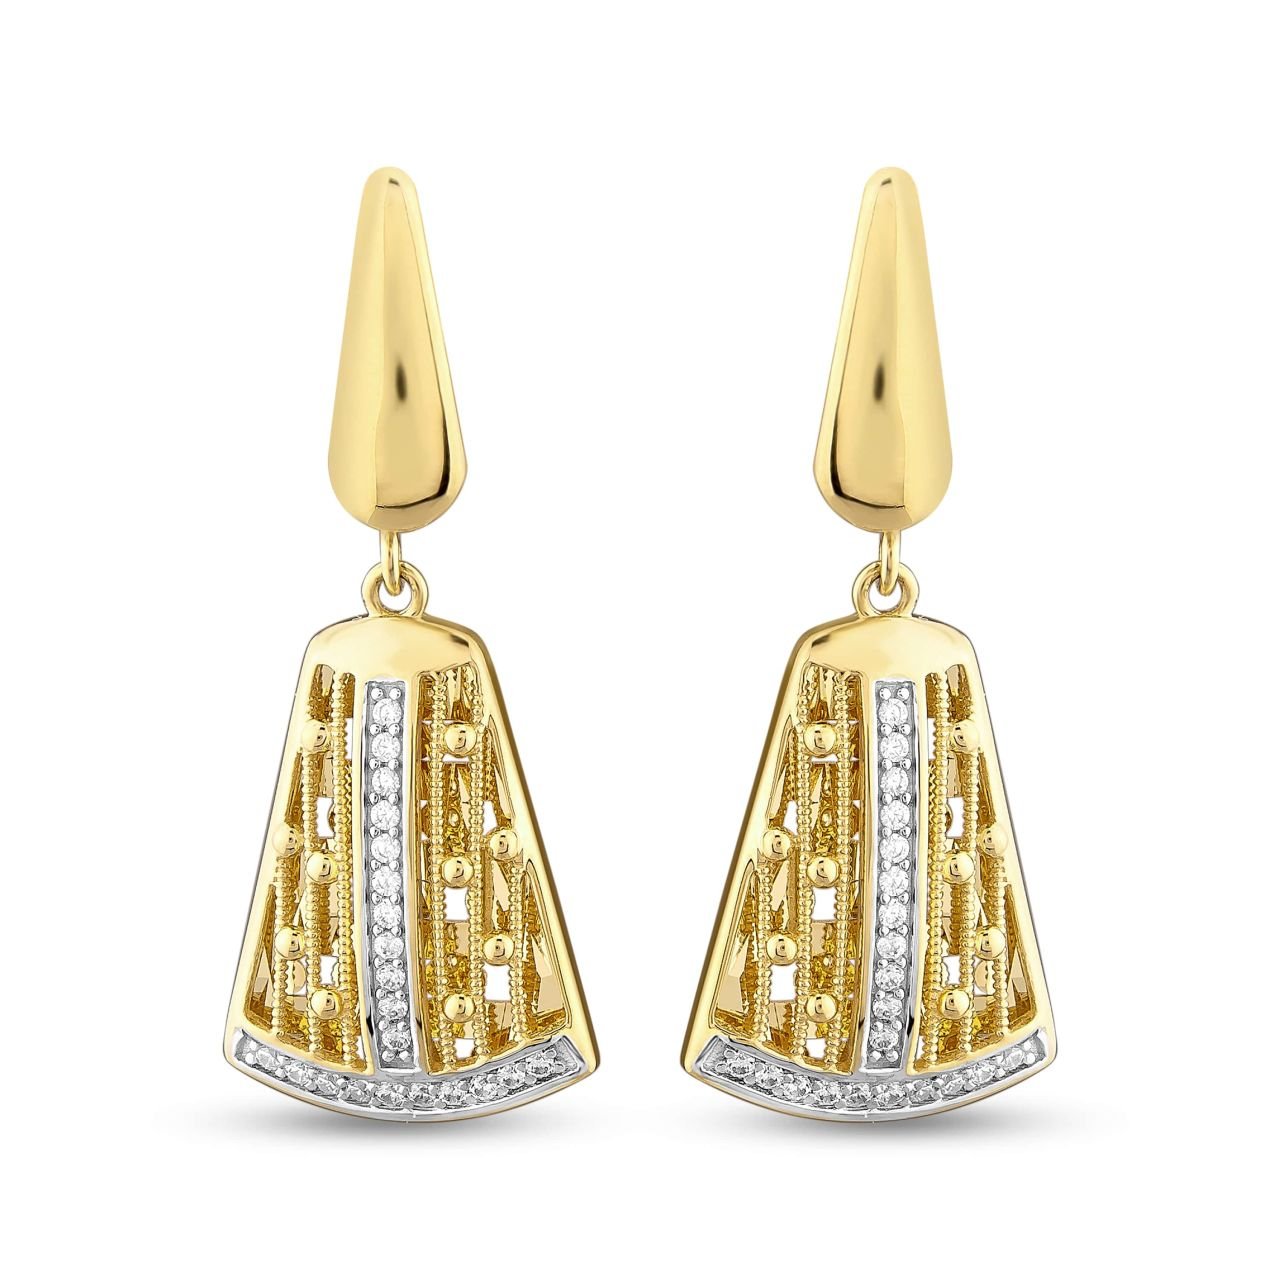 TS 2291 is 6.00 g Gold Earrings